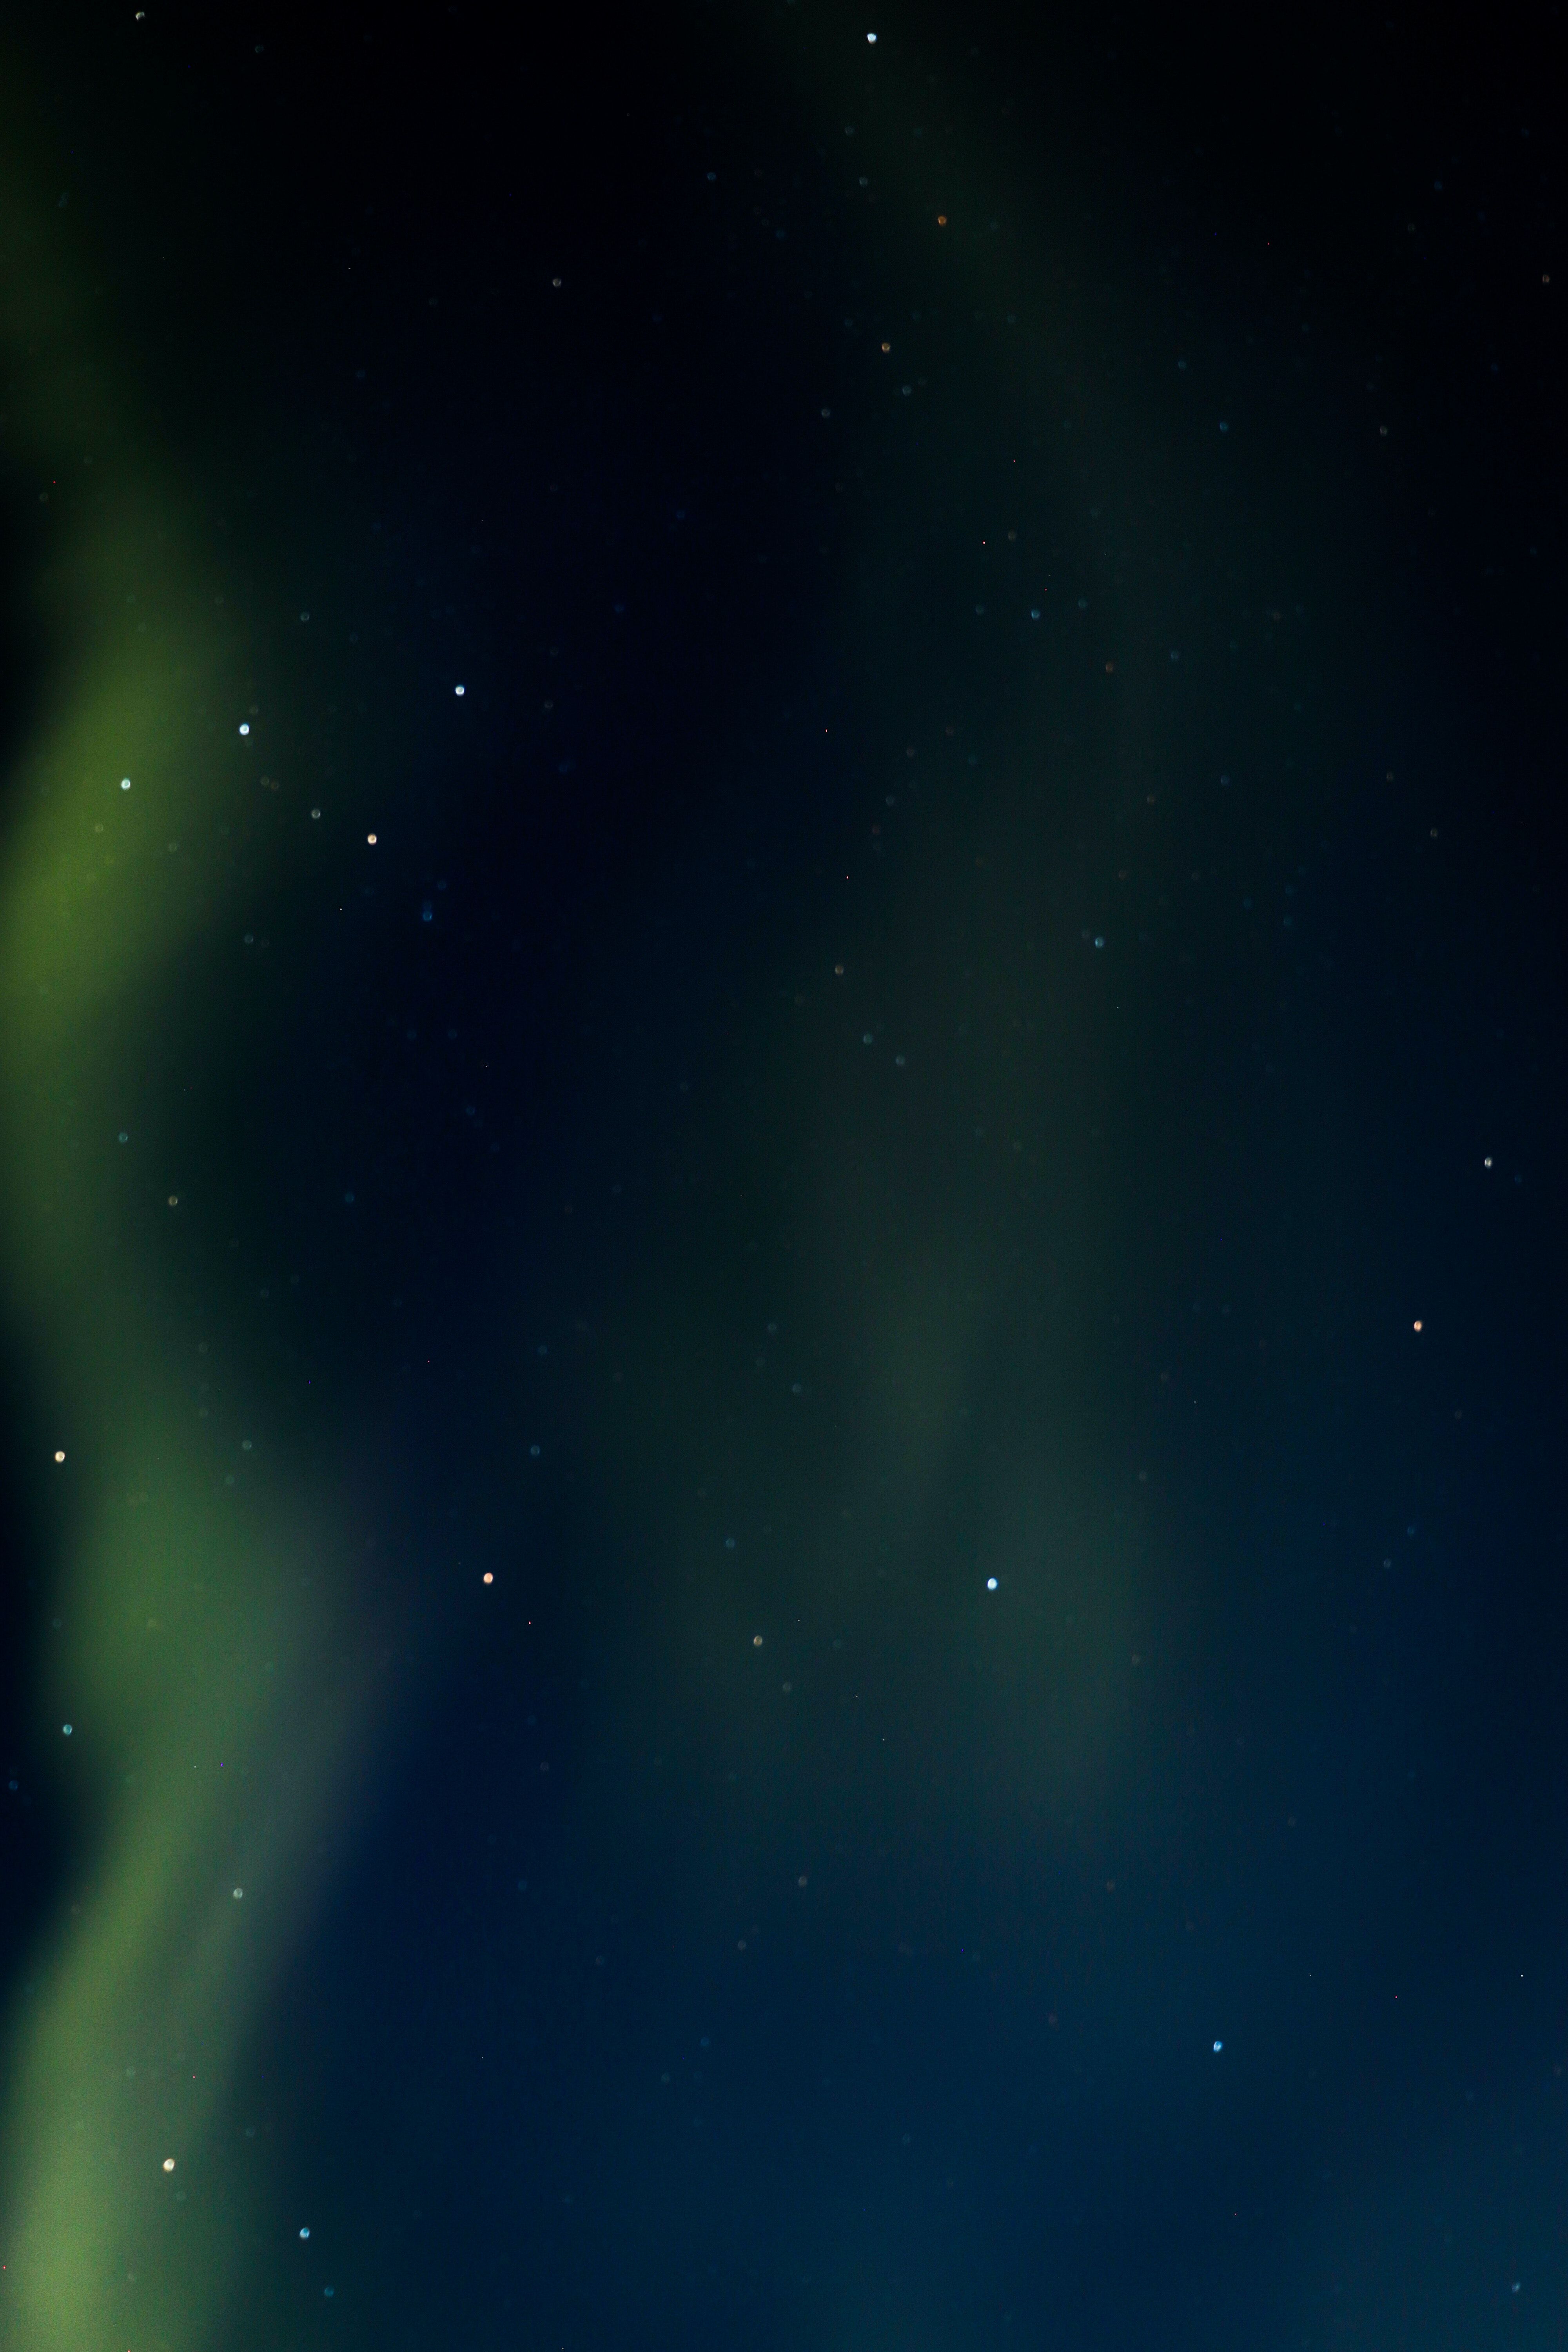  Polarlicht Hintergrundbild 4000x6000. Kostenloses Foto zum Thema: landschaftlich, nachthimmel, nordlicht, polares klima, silhouette, wald